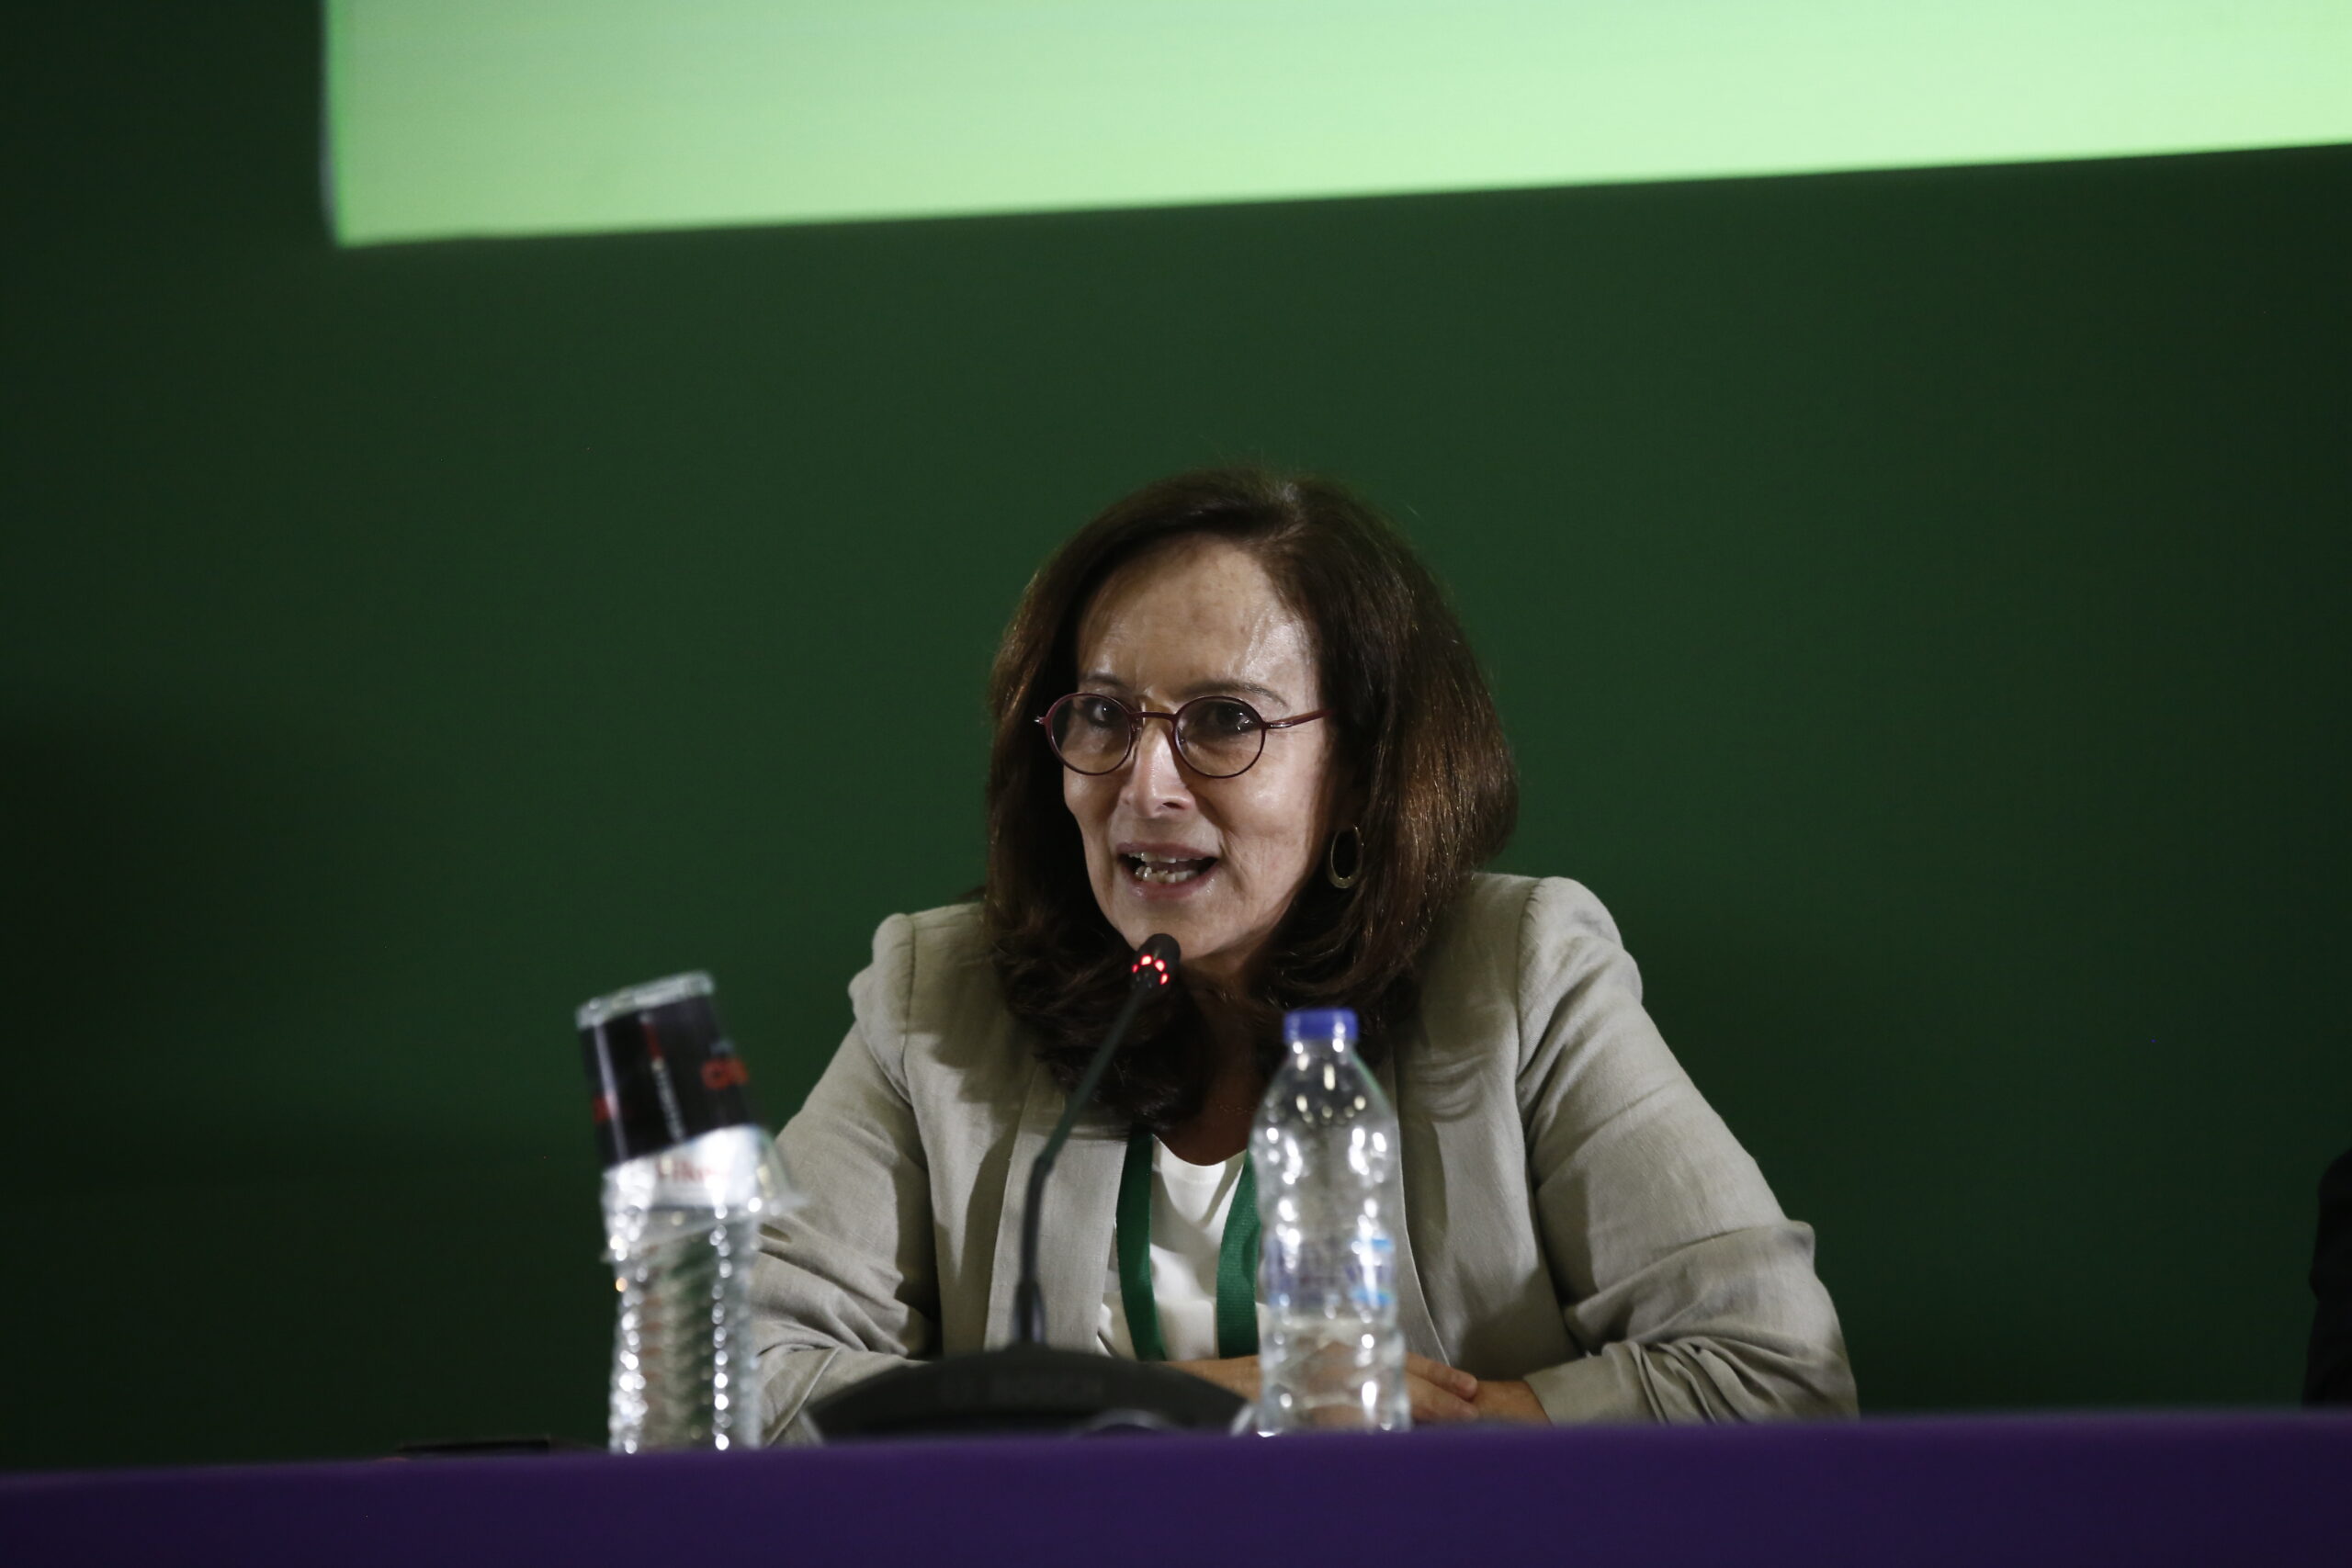 Συνέδριο ΠΑΣΟΚ-ΚΙΝΑΛ: Άννα Διαμαντοπούλου: «Χρειάζονται νέοι τρόποι, ιδέες και πολιτικές συνεργασίες για το σύγχρονο κοινωνικό κράτος»